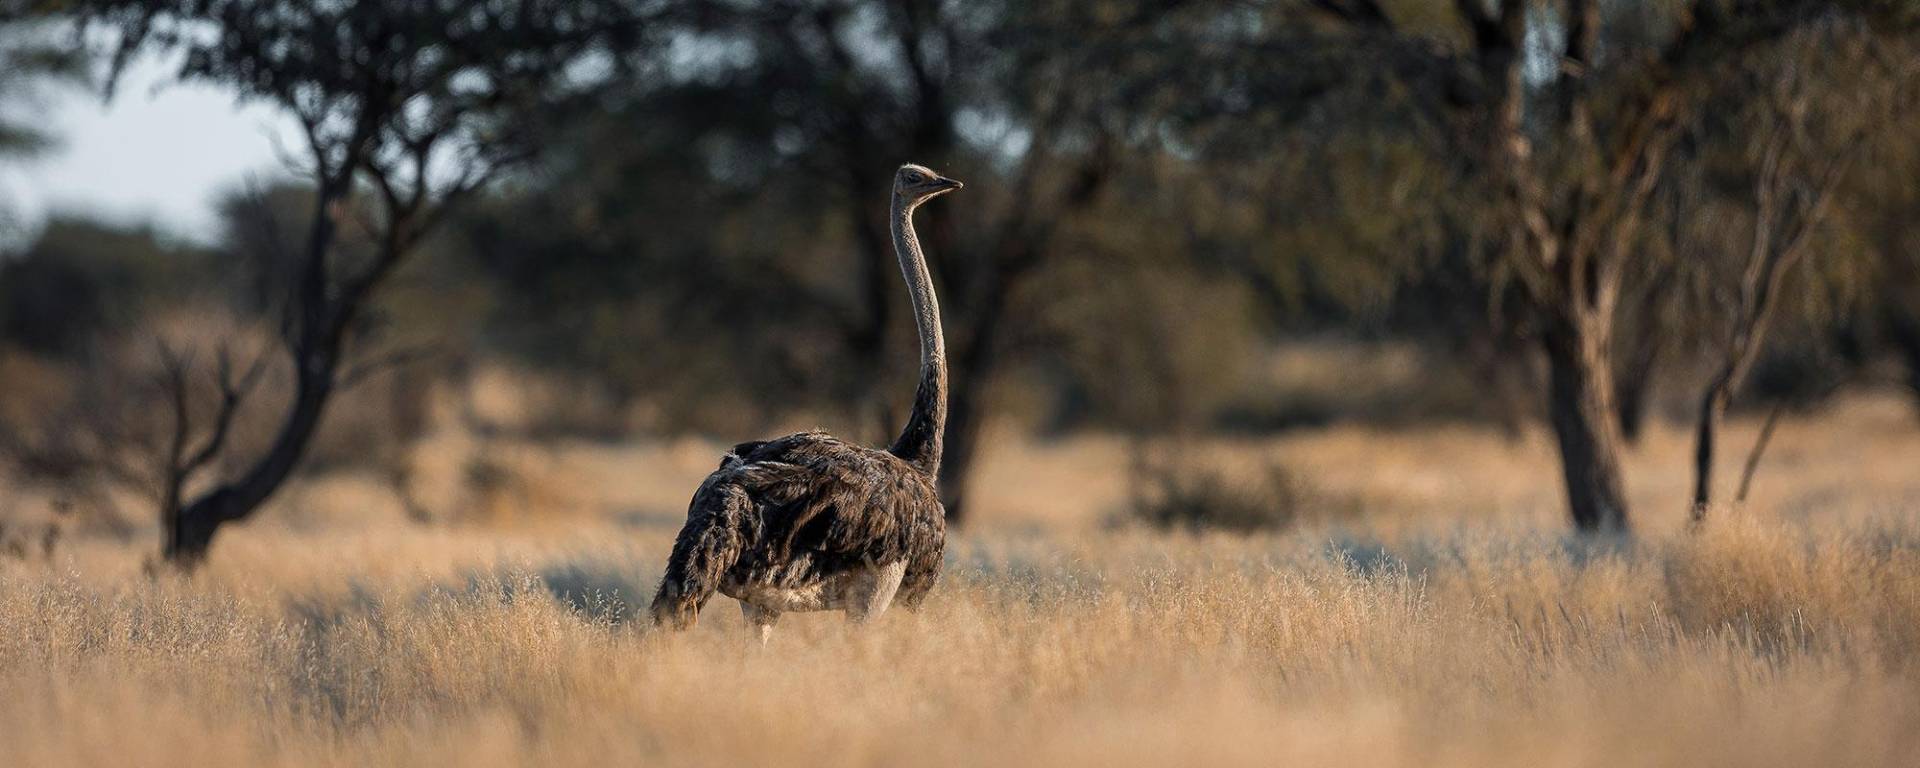 Vogelstrauß in der Kalahari